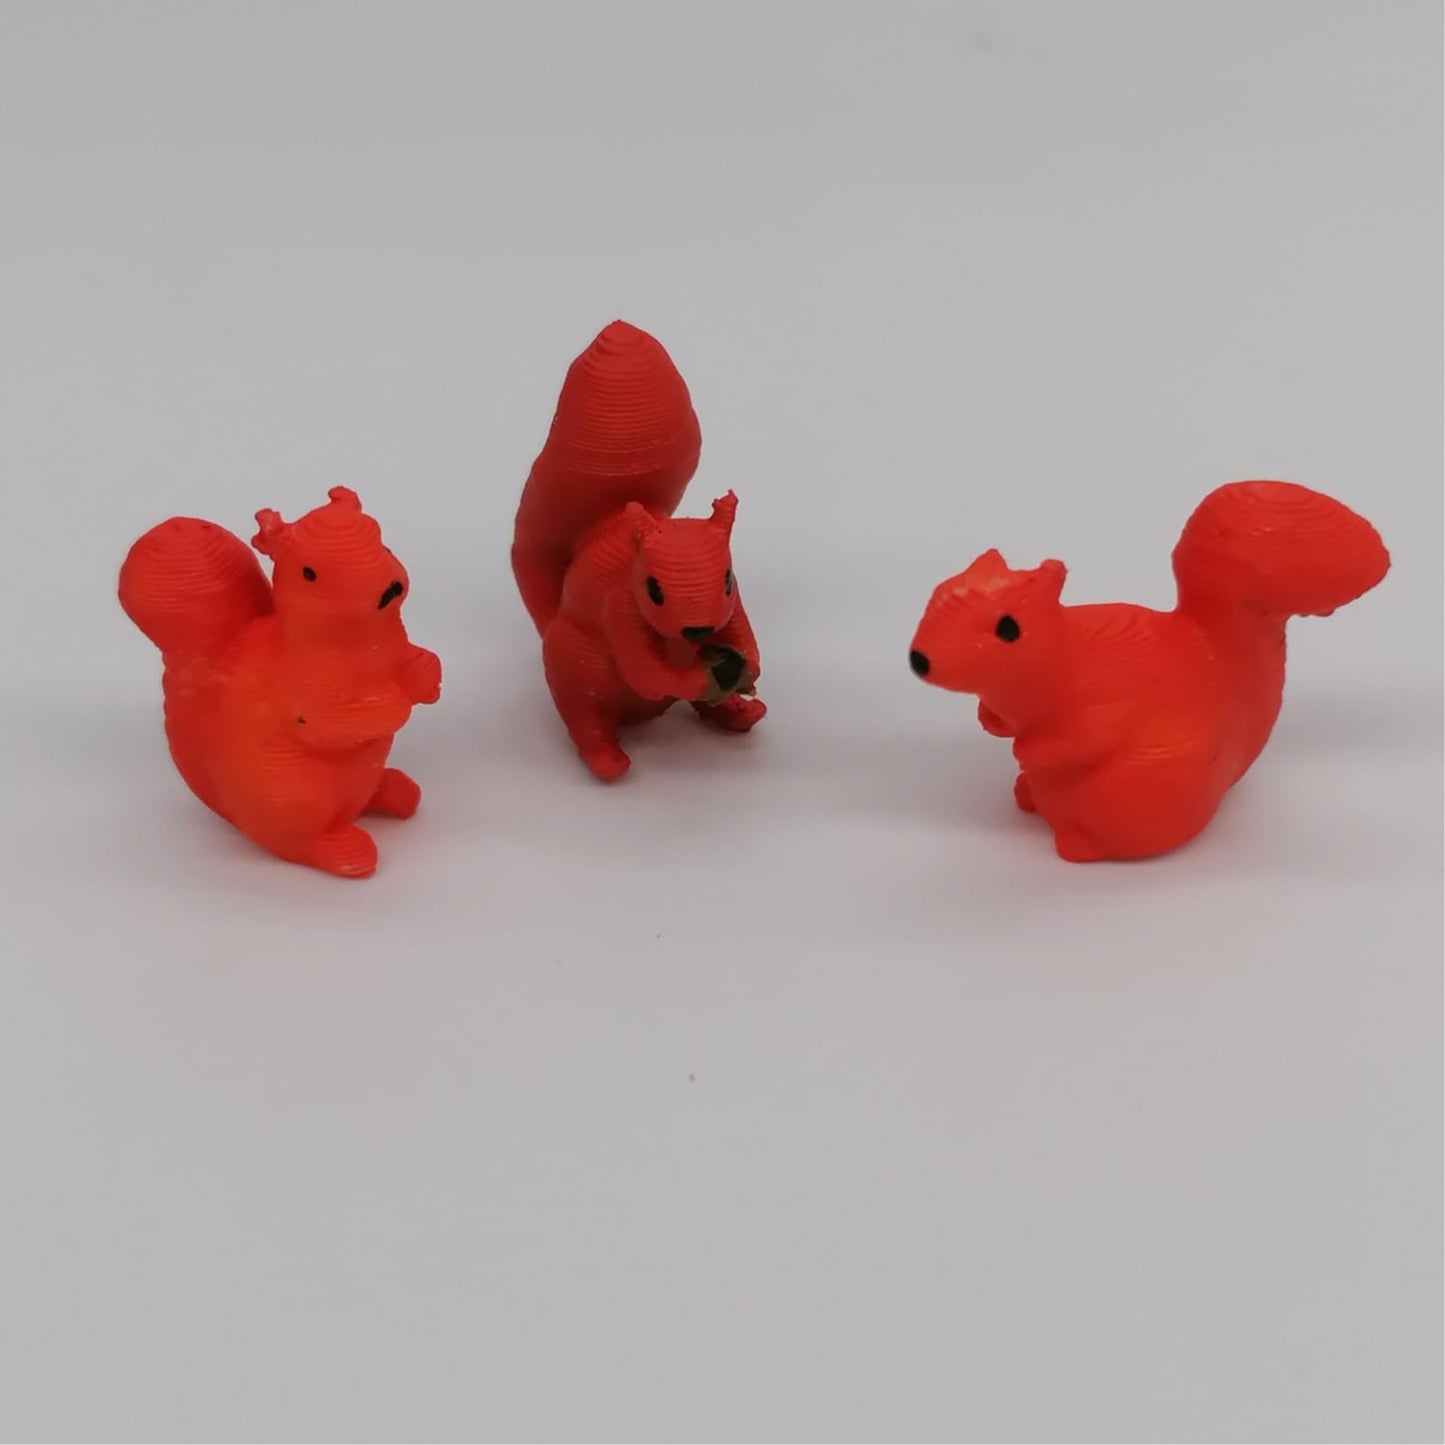 Tiere des Waldes Miniaturen im Maßstab 1:12 - Eichhörnchen - Miniaturen